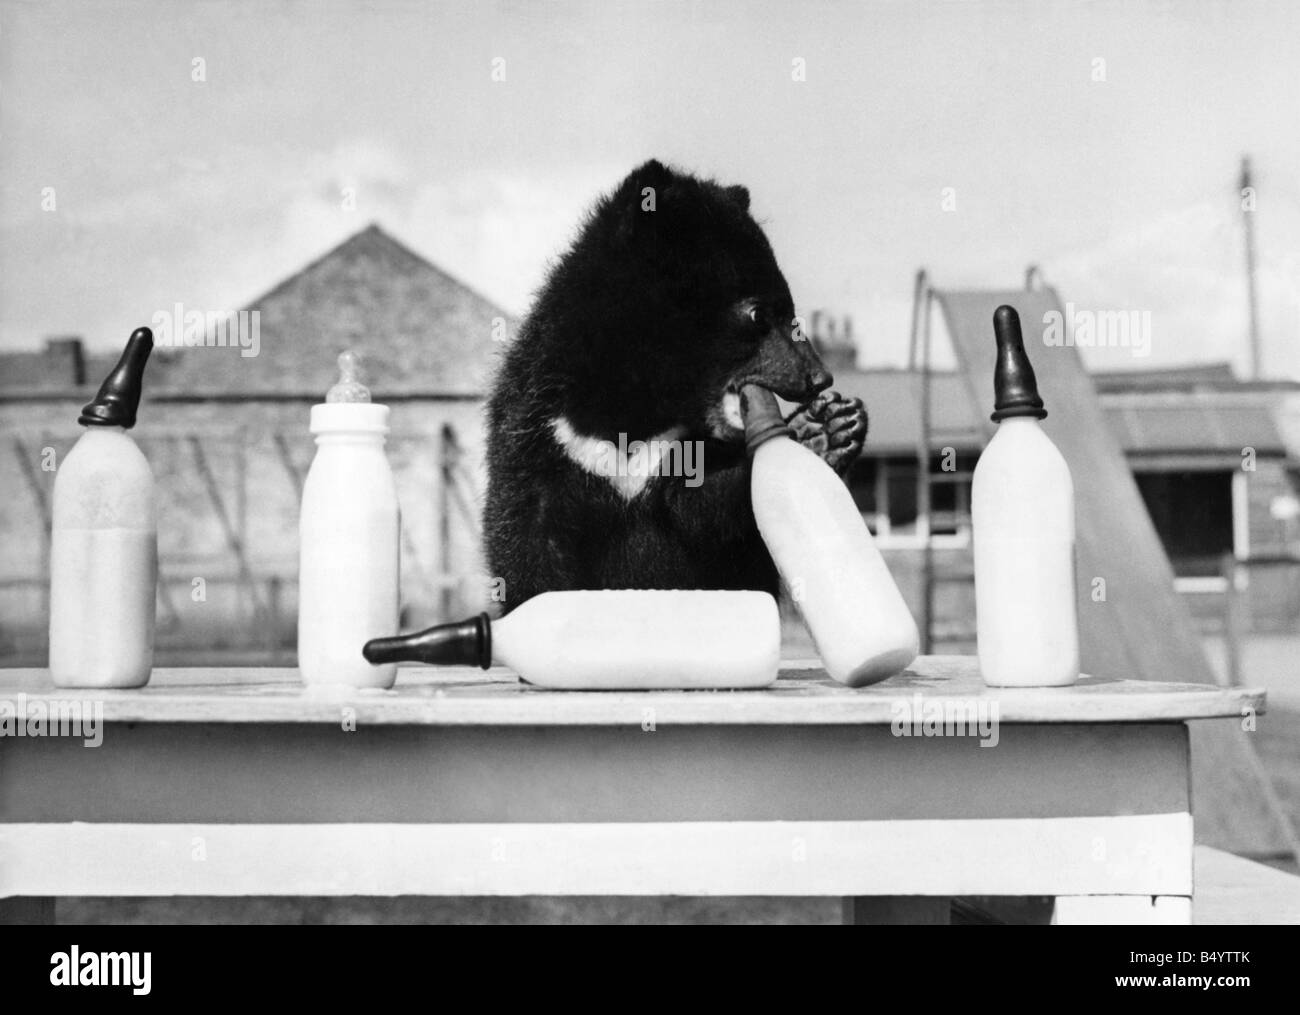 Mentre Debbie alimenta un orso, un altro aiuta a se stesso. Aprile 1965 P000456 Foto Stock